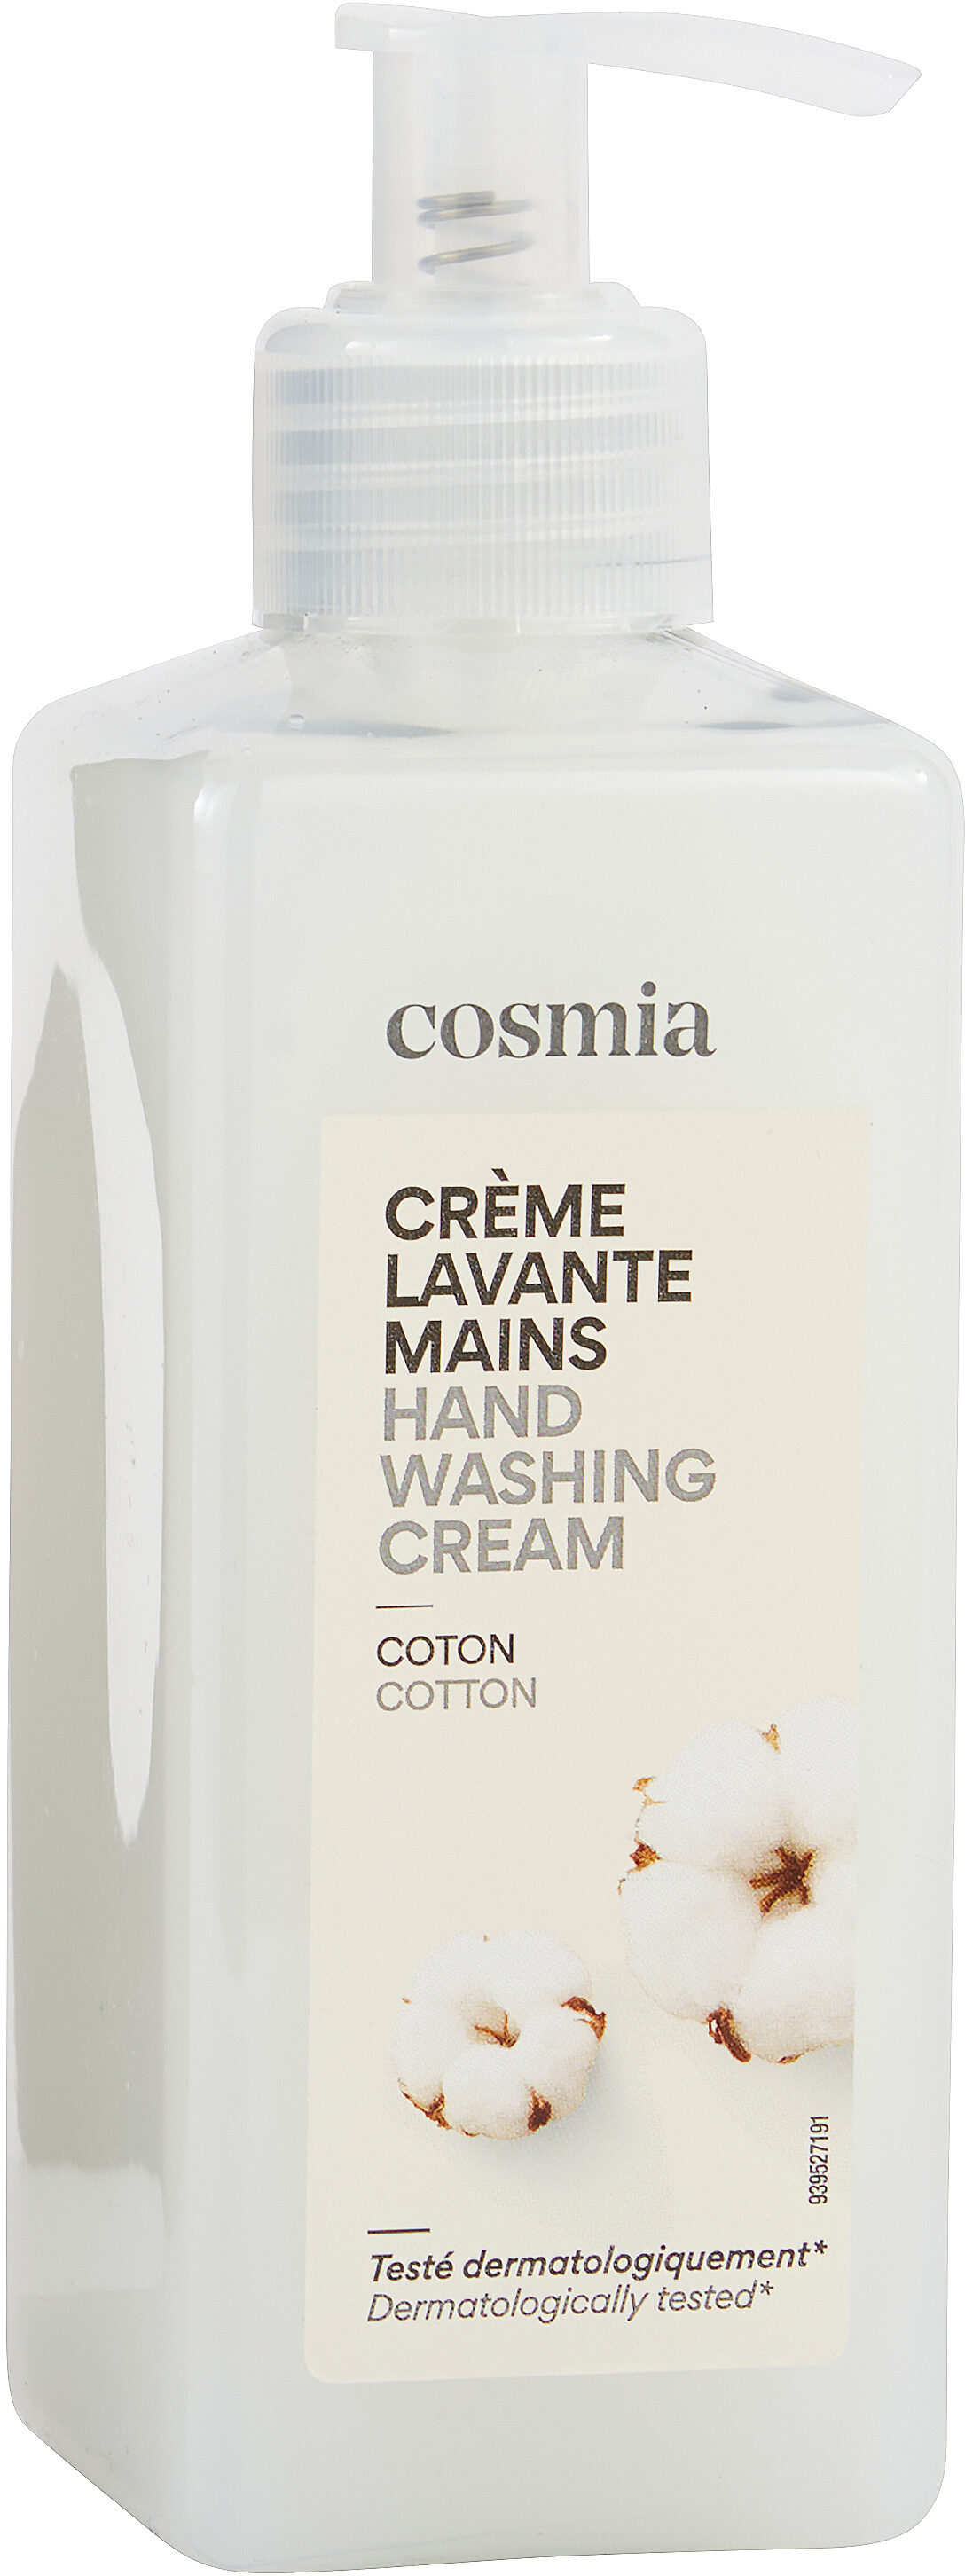 Crème lavante mains - Produktas - fr